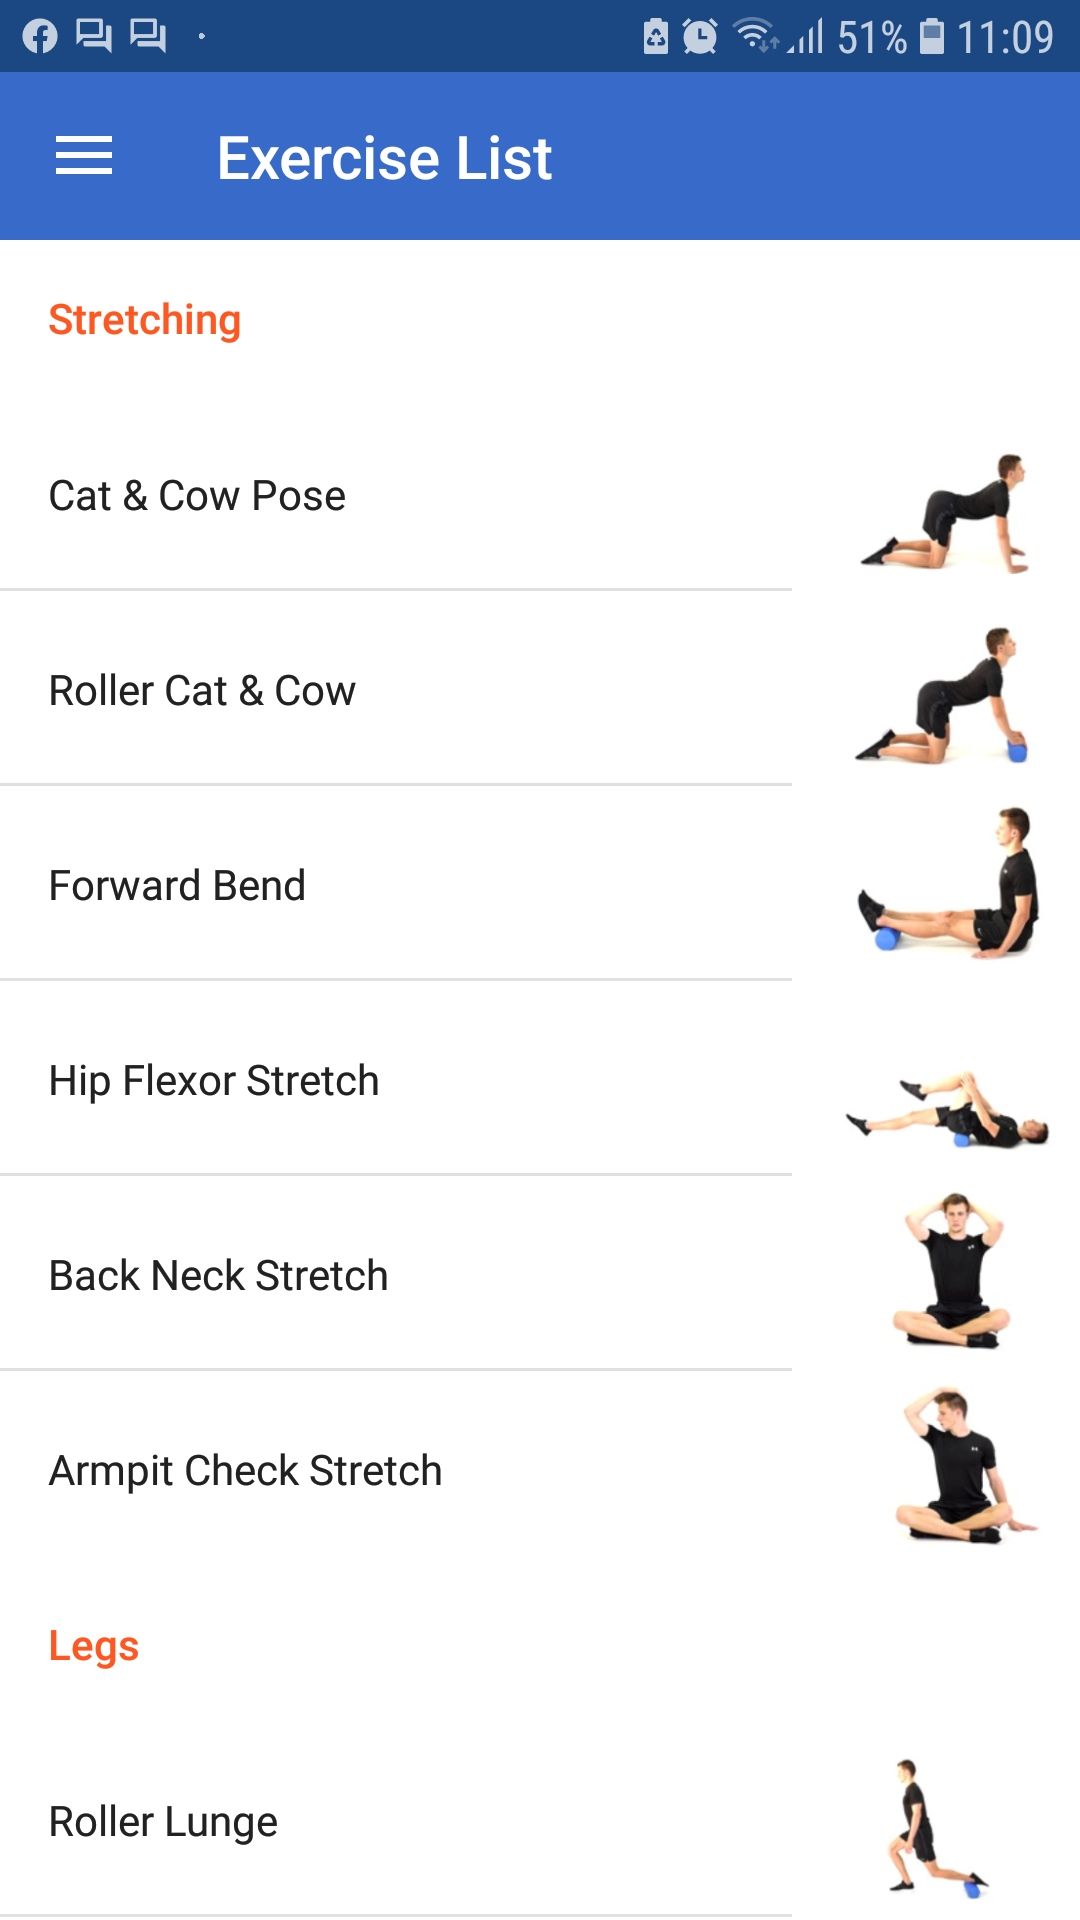 Foam Roller mobile fitness app exercise list